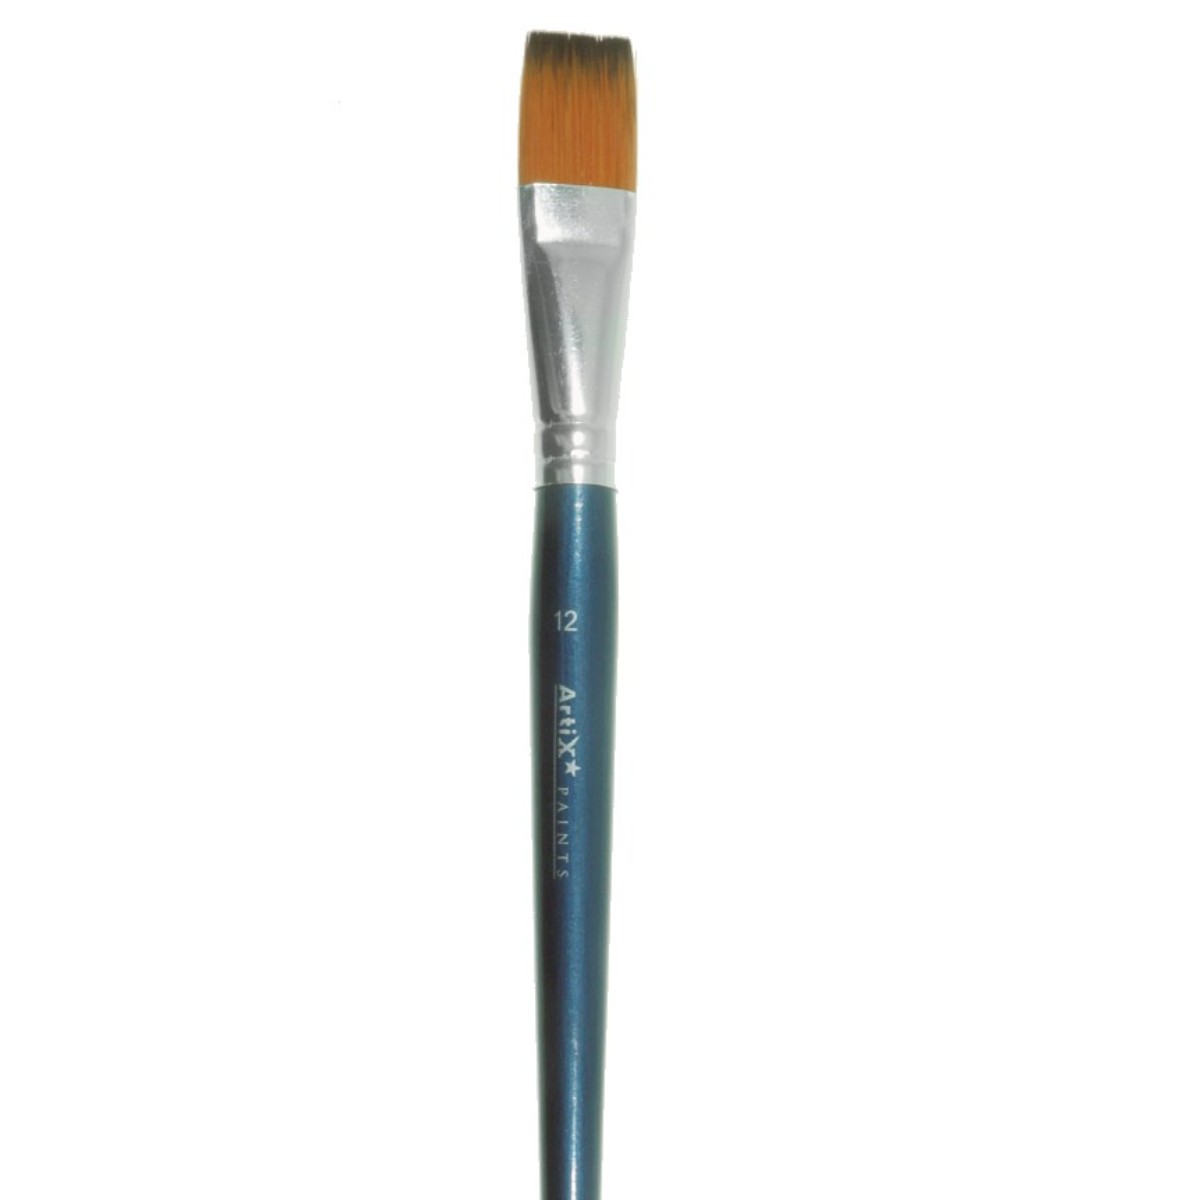 Pensula sintetica varf drept coada scurta Artix nr 12 PP228